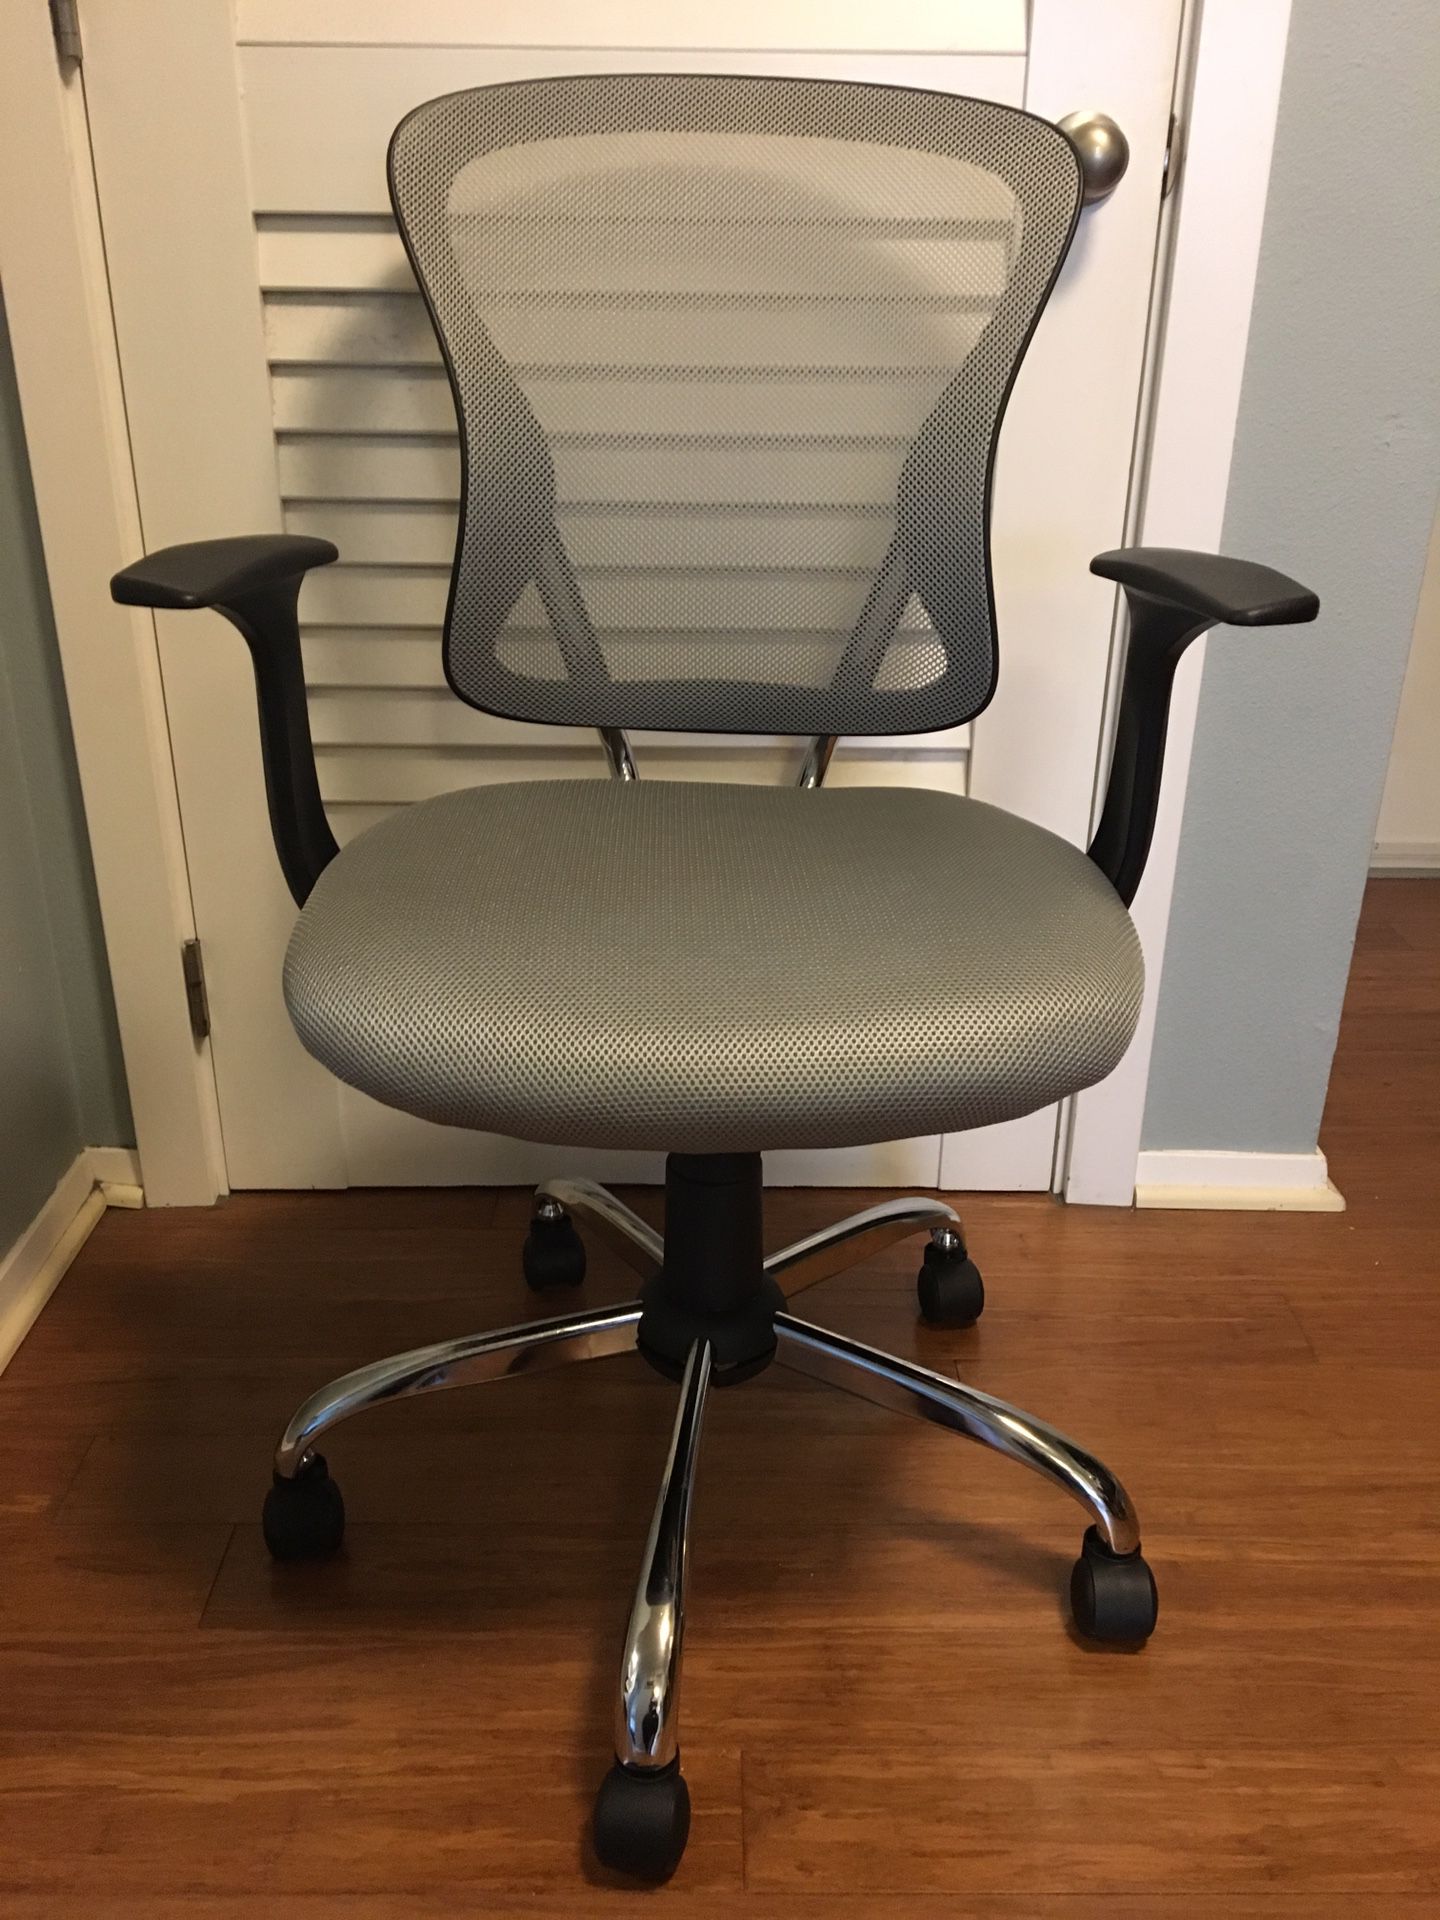 Brand new office chair -Ballard